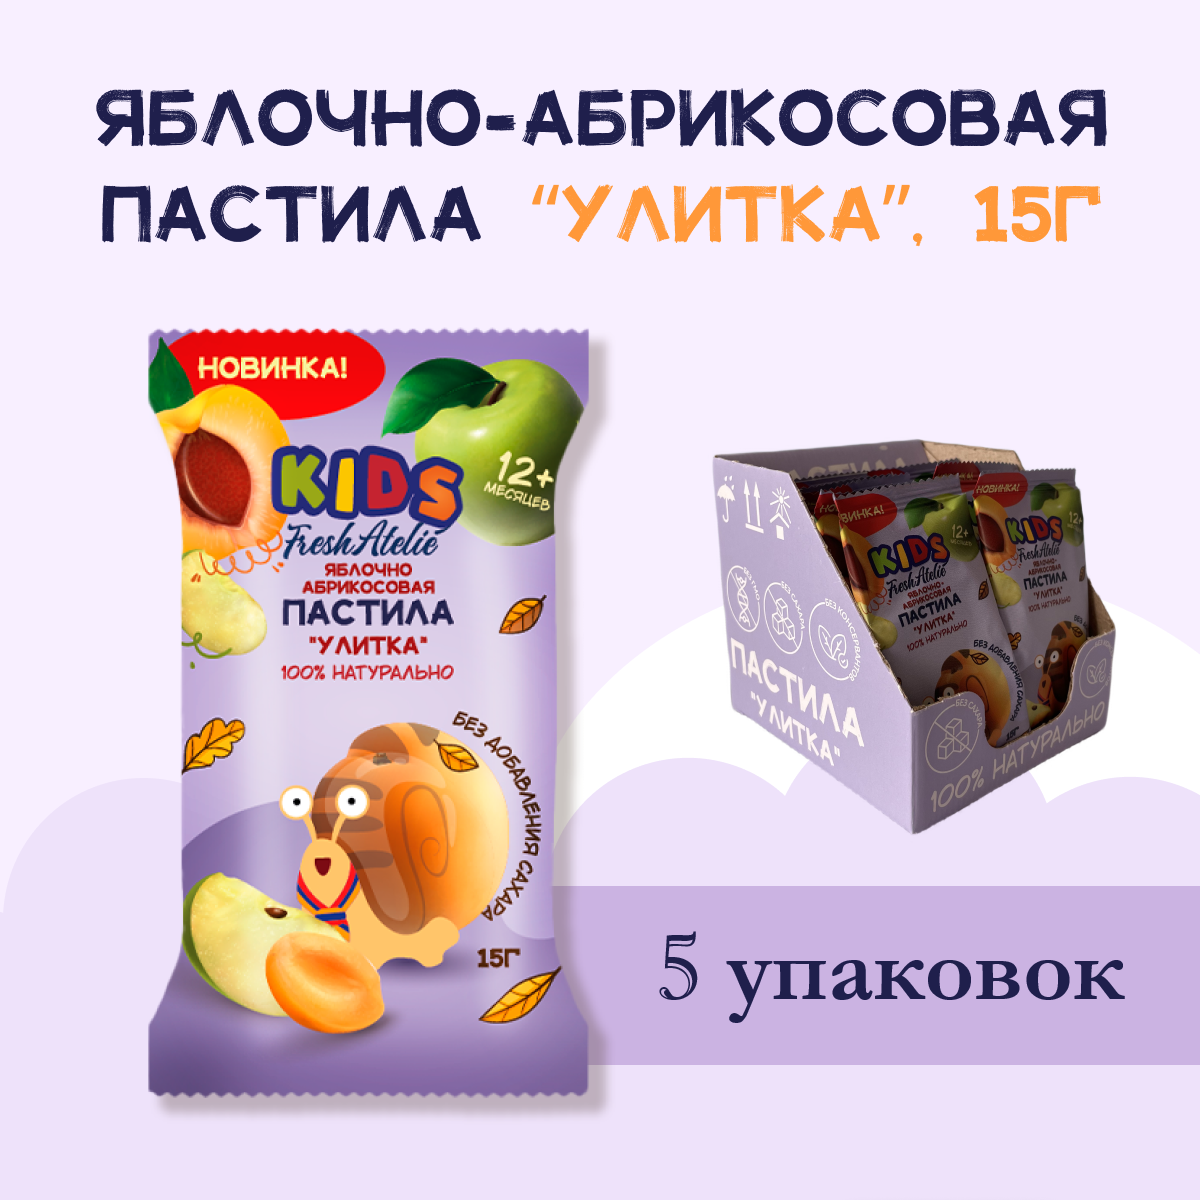 Пастила Яблочно-Абрикосовая для детей FRESH ATELIE KIDS Улитка 15гр, 5 упаковок вкусняшки для сахарных детей